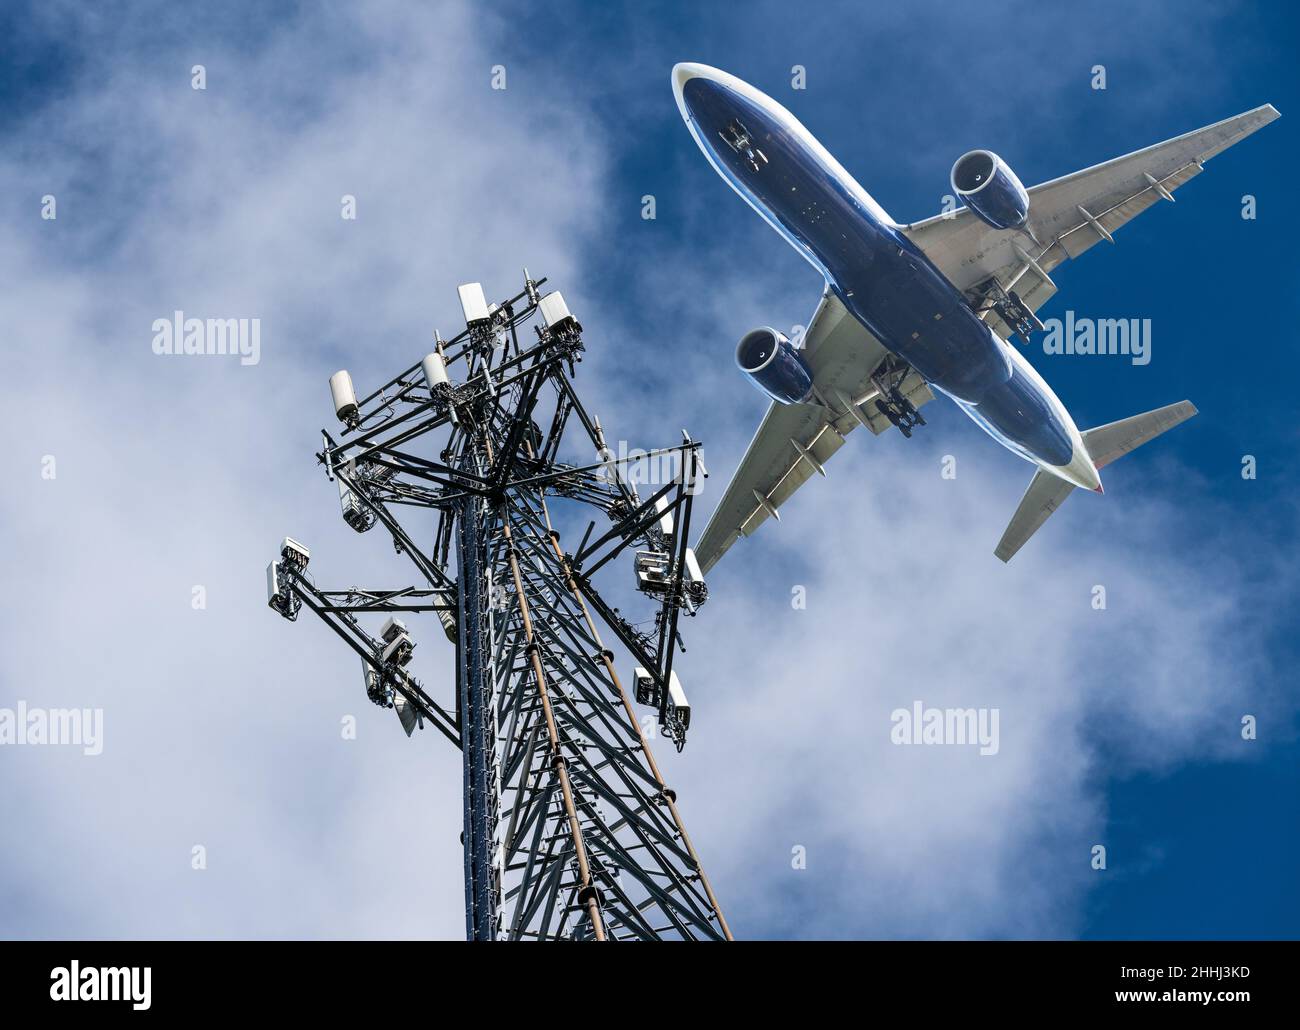 Torre cellulare con 5G frequenze in banda C con velivolo che arriva a terra. Le compagnie aeree sono preoccupate per le interferenze con l'altimetro piano Foto Stock